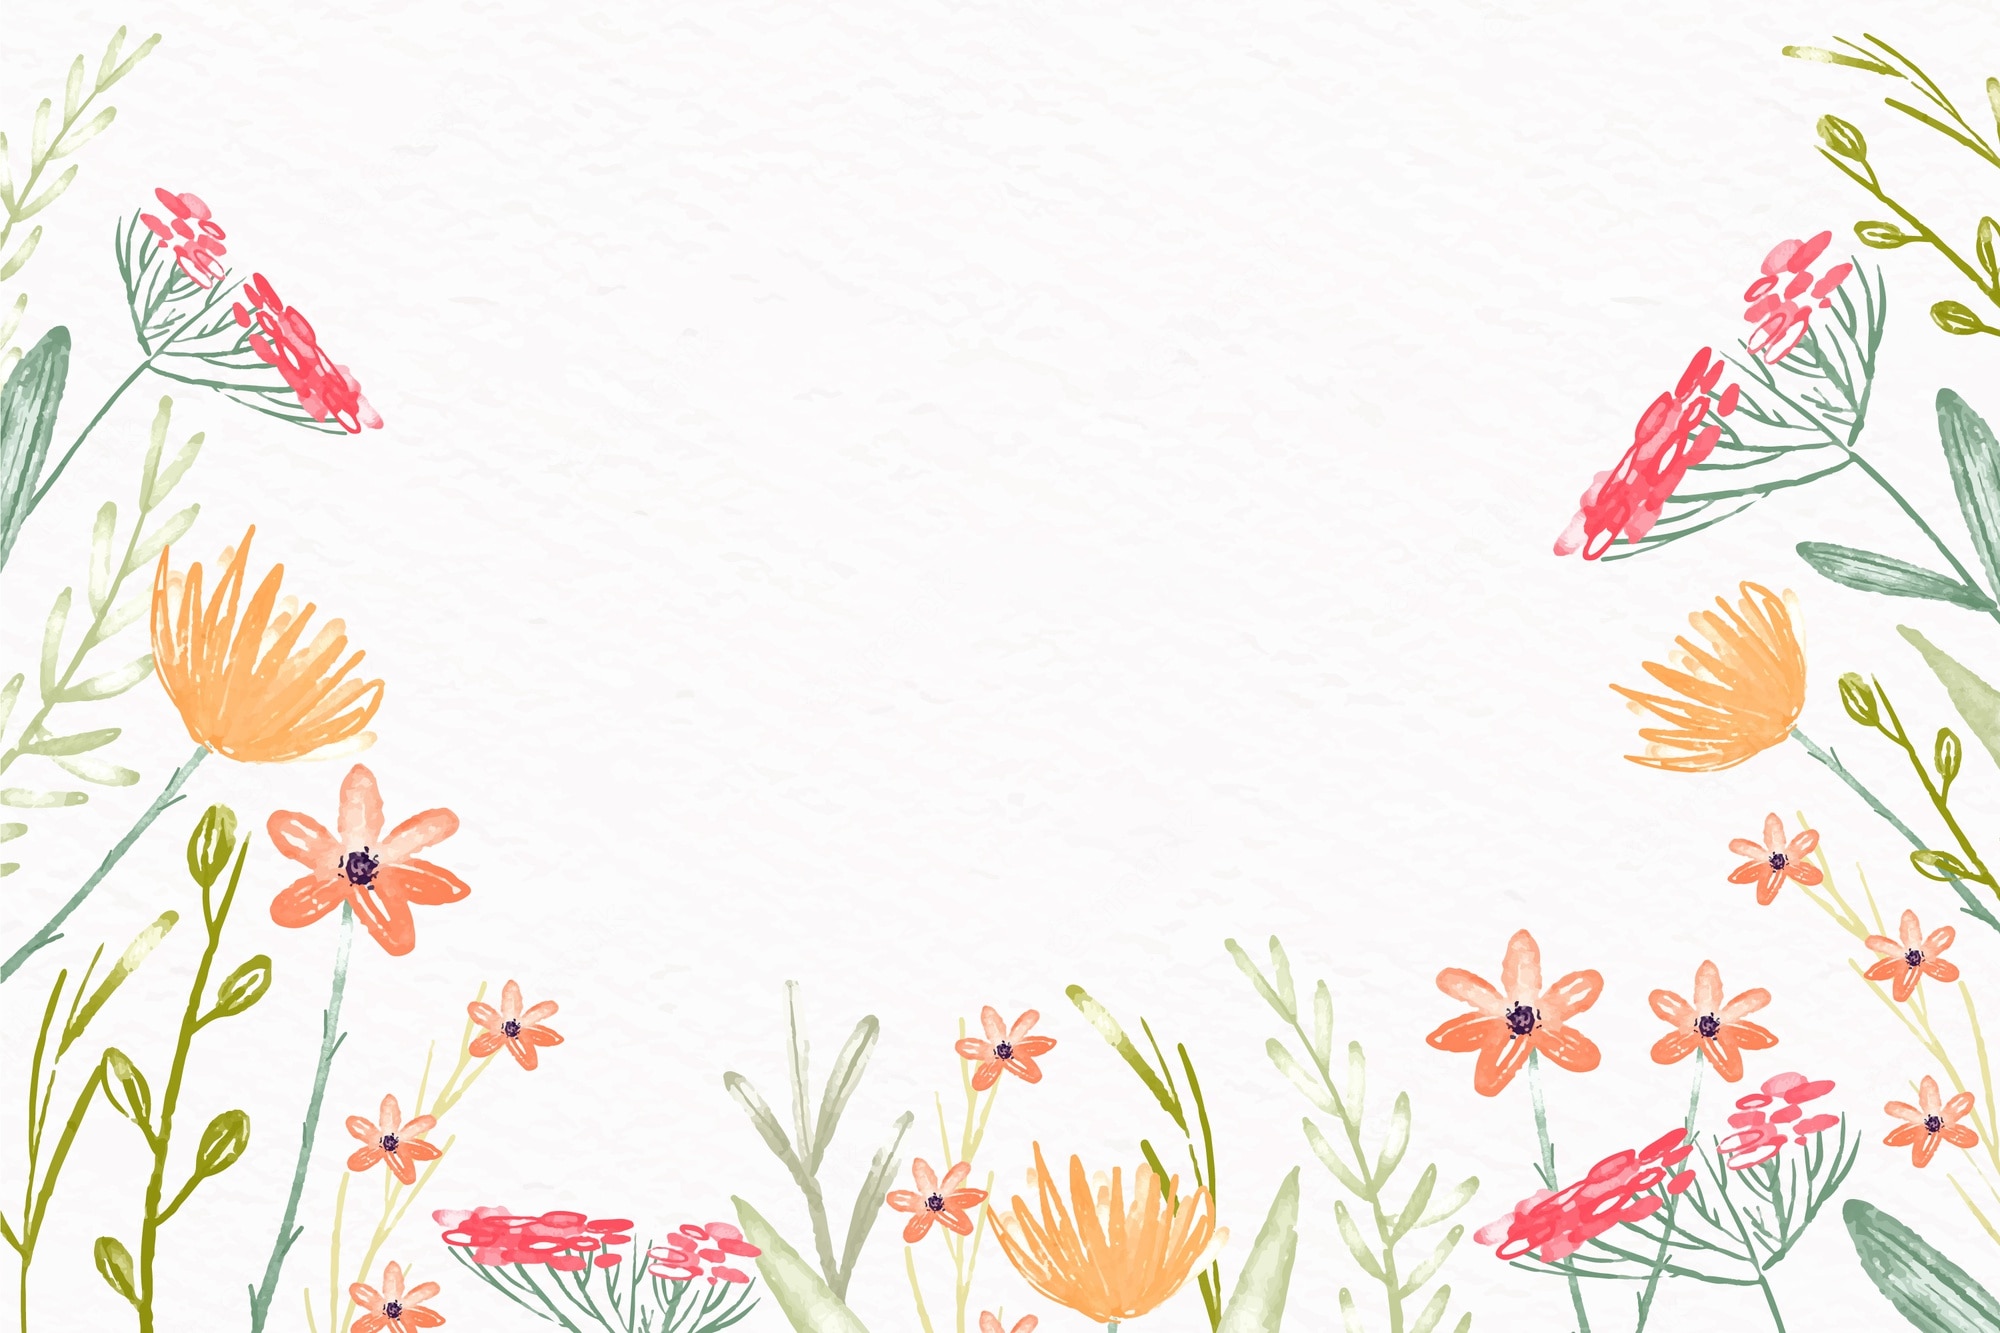 Premium Vector. Watercolor flowers wallpaper in pastel colors design